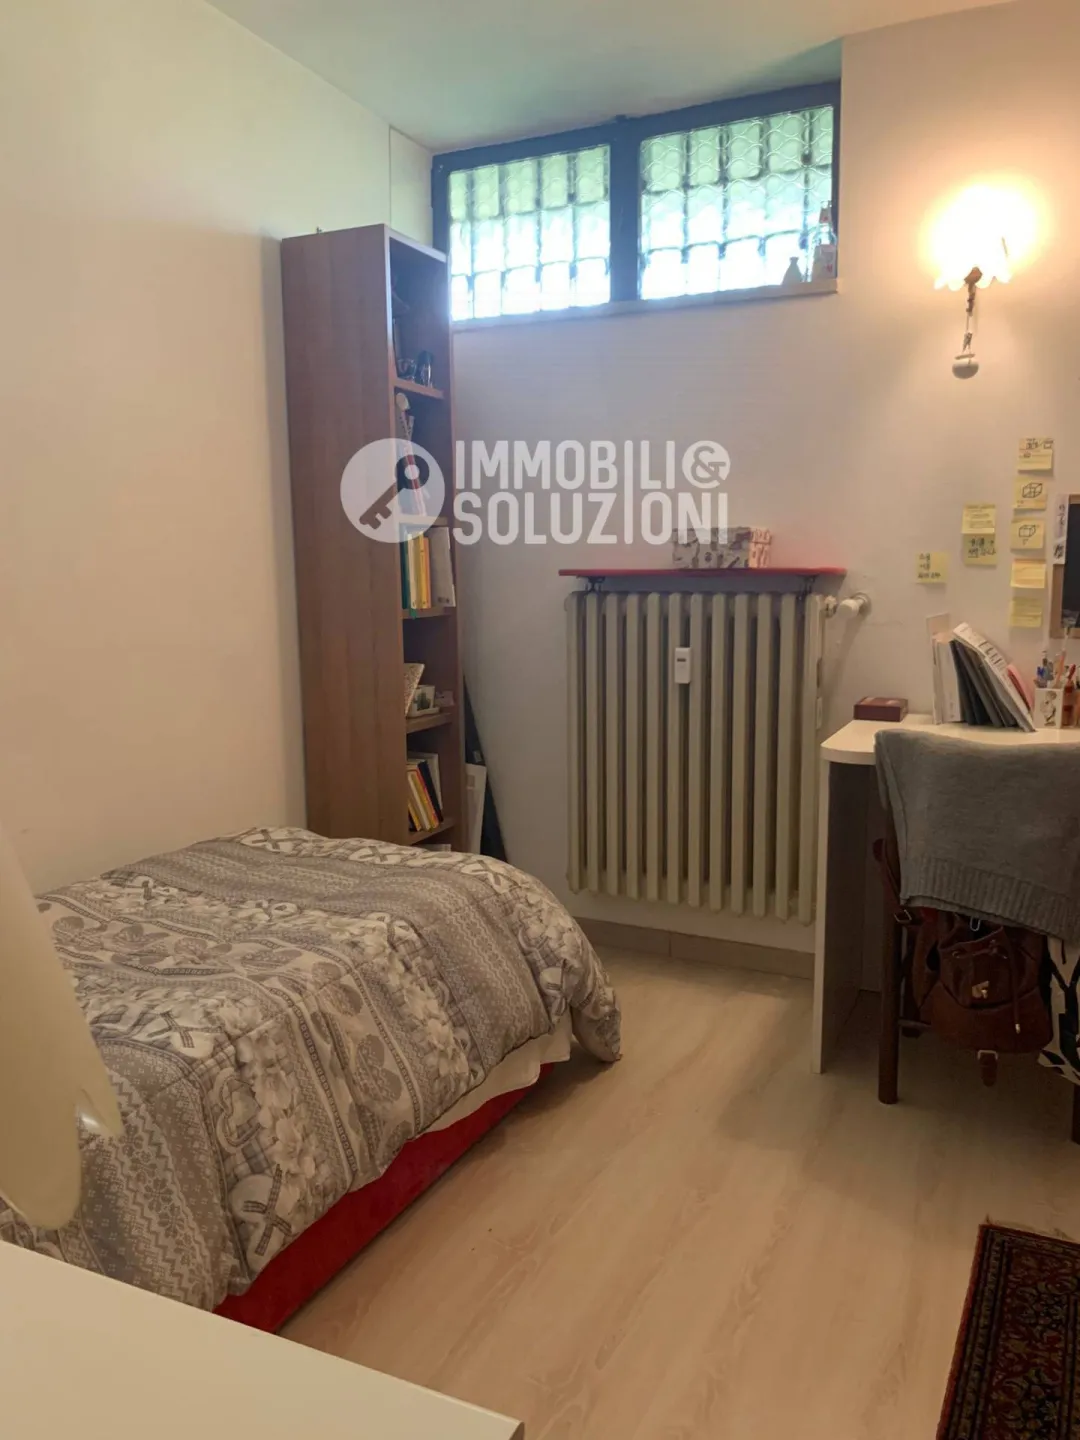 Immagine per Appartamento in vendita a Bergamo Via Alessandro Volta